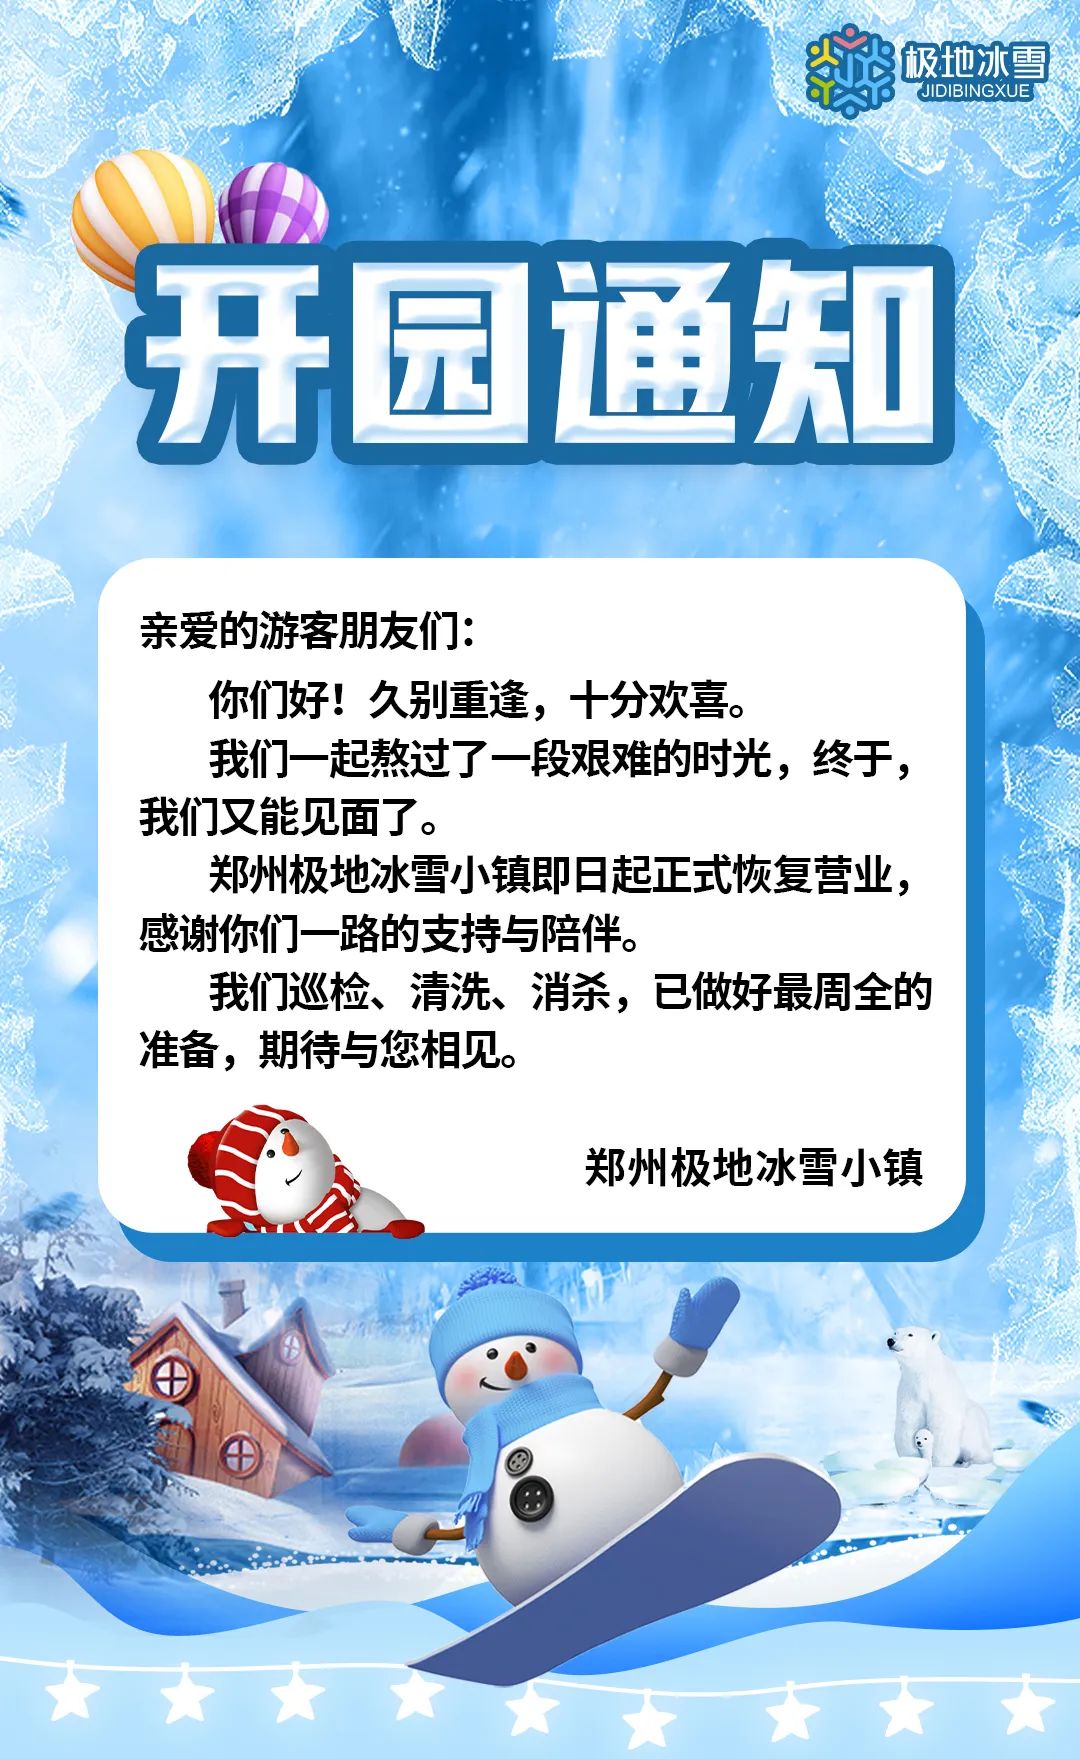 郑州极地冰雪小镇12月7日正式开园营业!(优惠政策+游玩攻略)